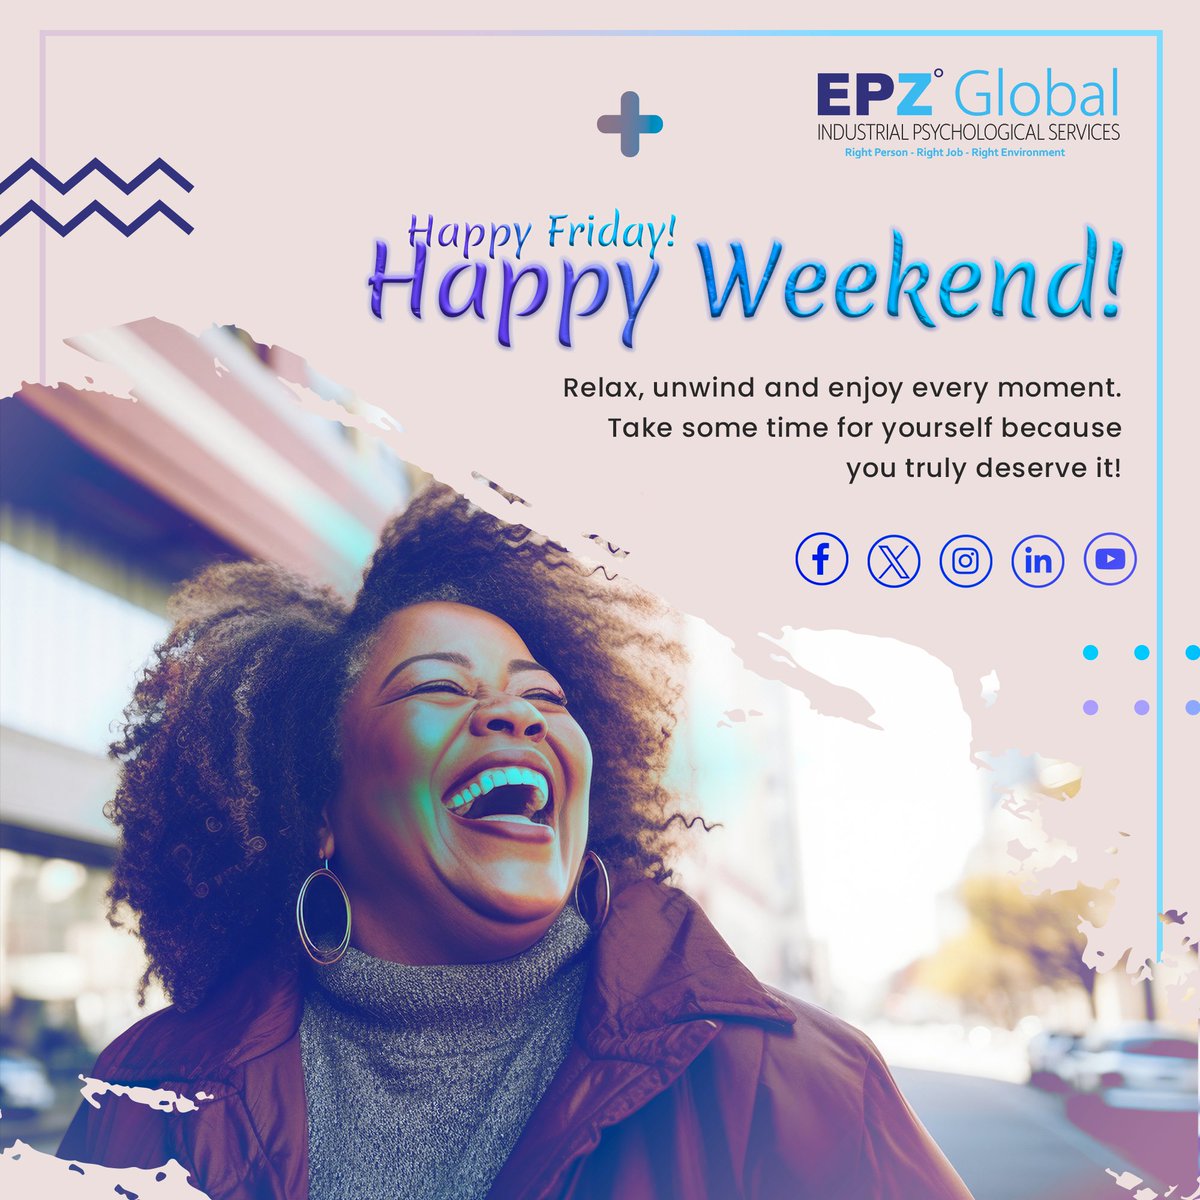 Happy Friday! Enjoy the weekend! #HappyFriday #WeekendVibes #RelaxandRecharge #epzglobal